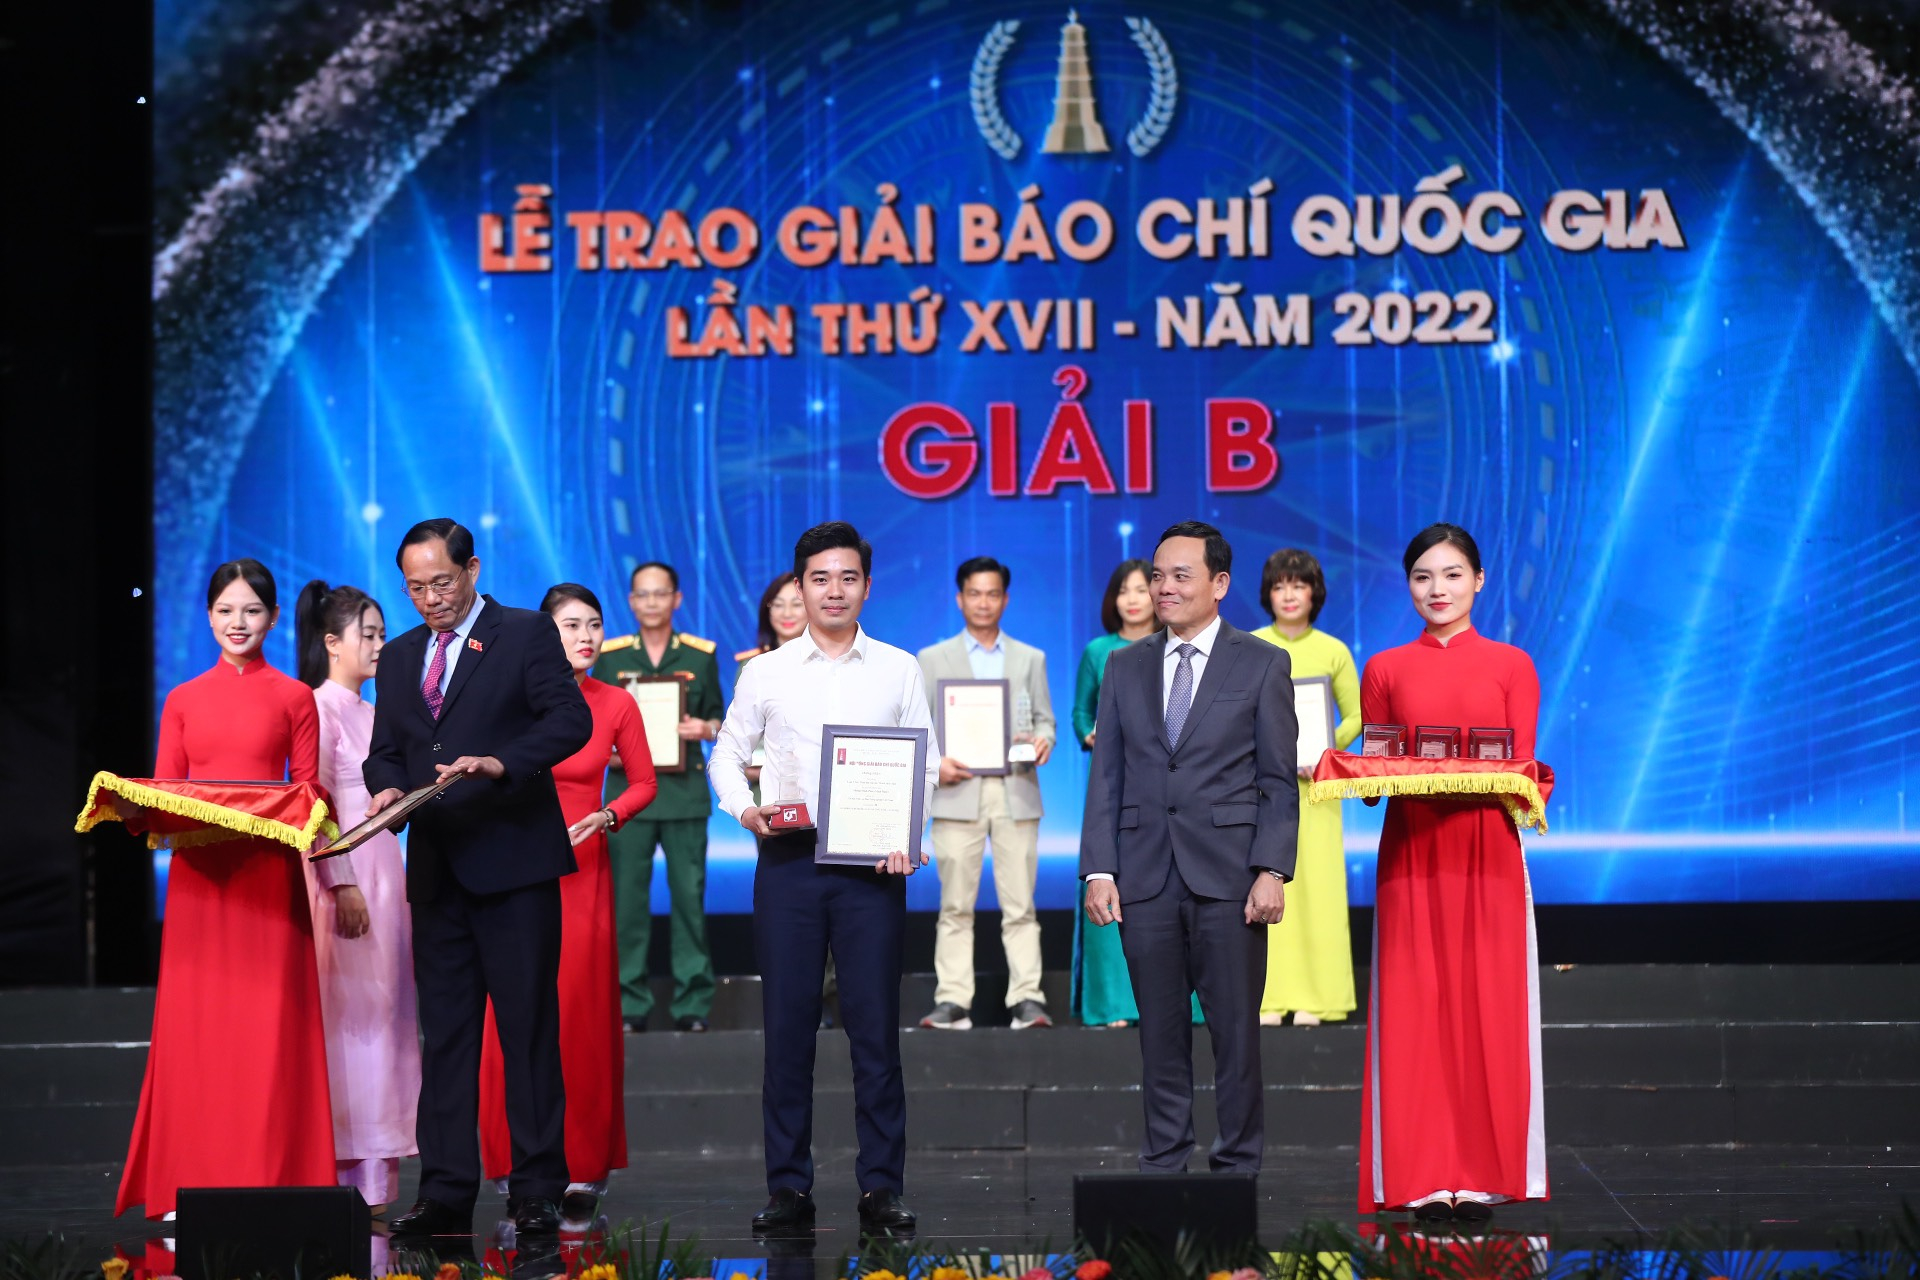 Tác giả Minh Phúc, Báo Nông nghiệp Việt Nam nhận Giải B Giải Báo chí Quốc gia lần thứ XVII - năm 2022. Ảnh: M.P.